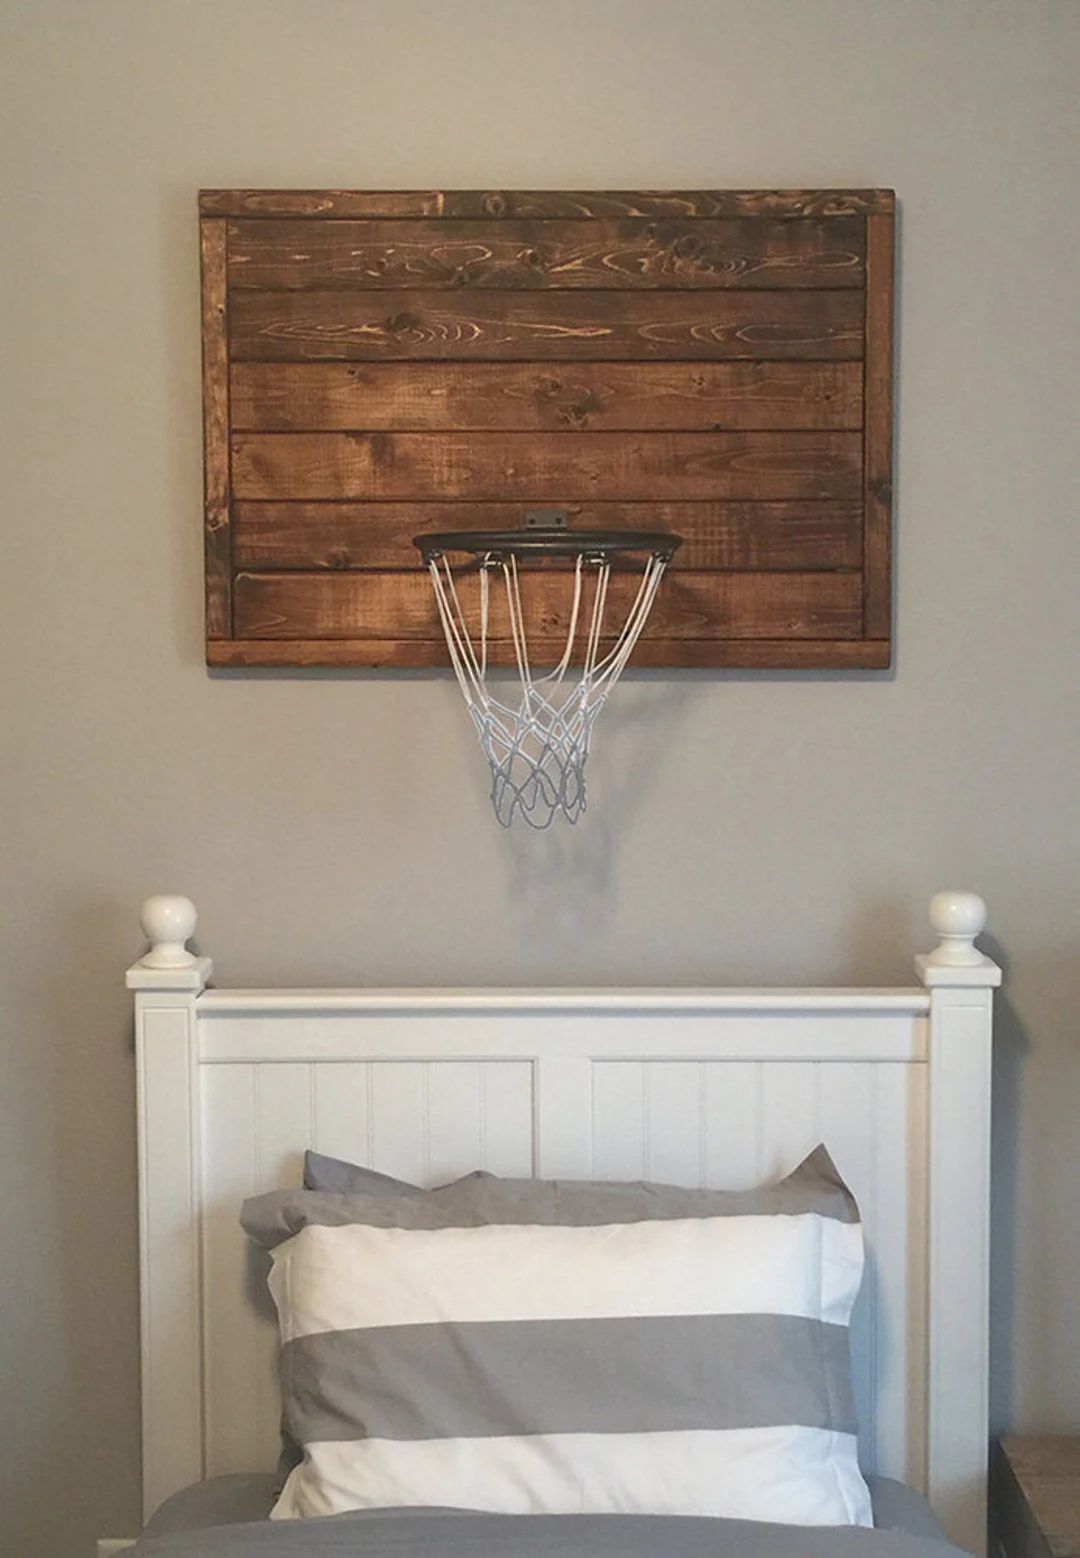 Custom reclaimed wood basketball hoop | Etsy (US)